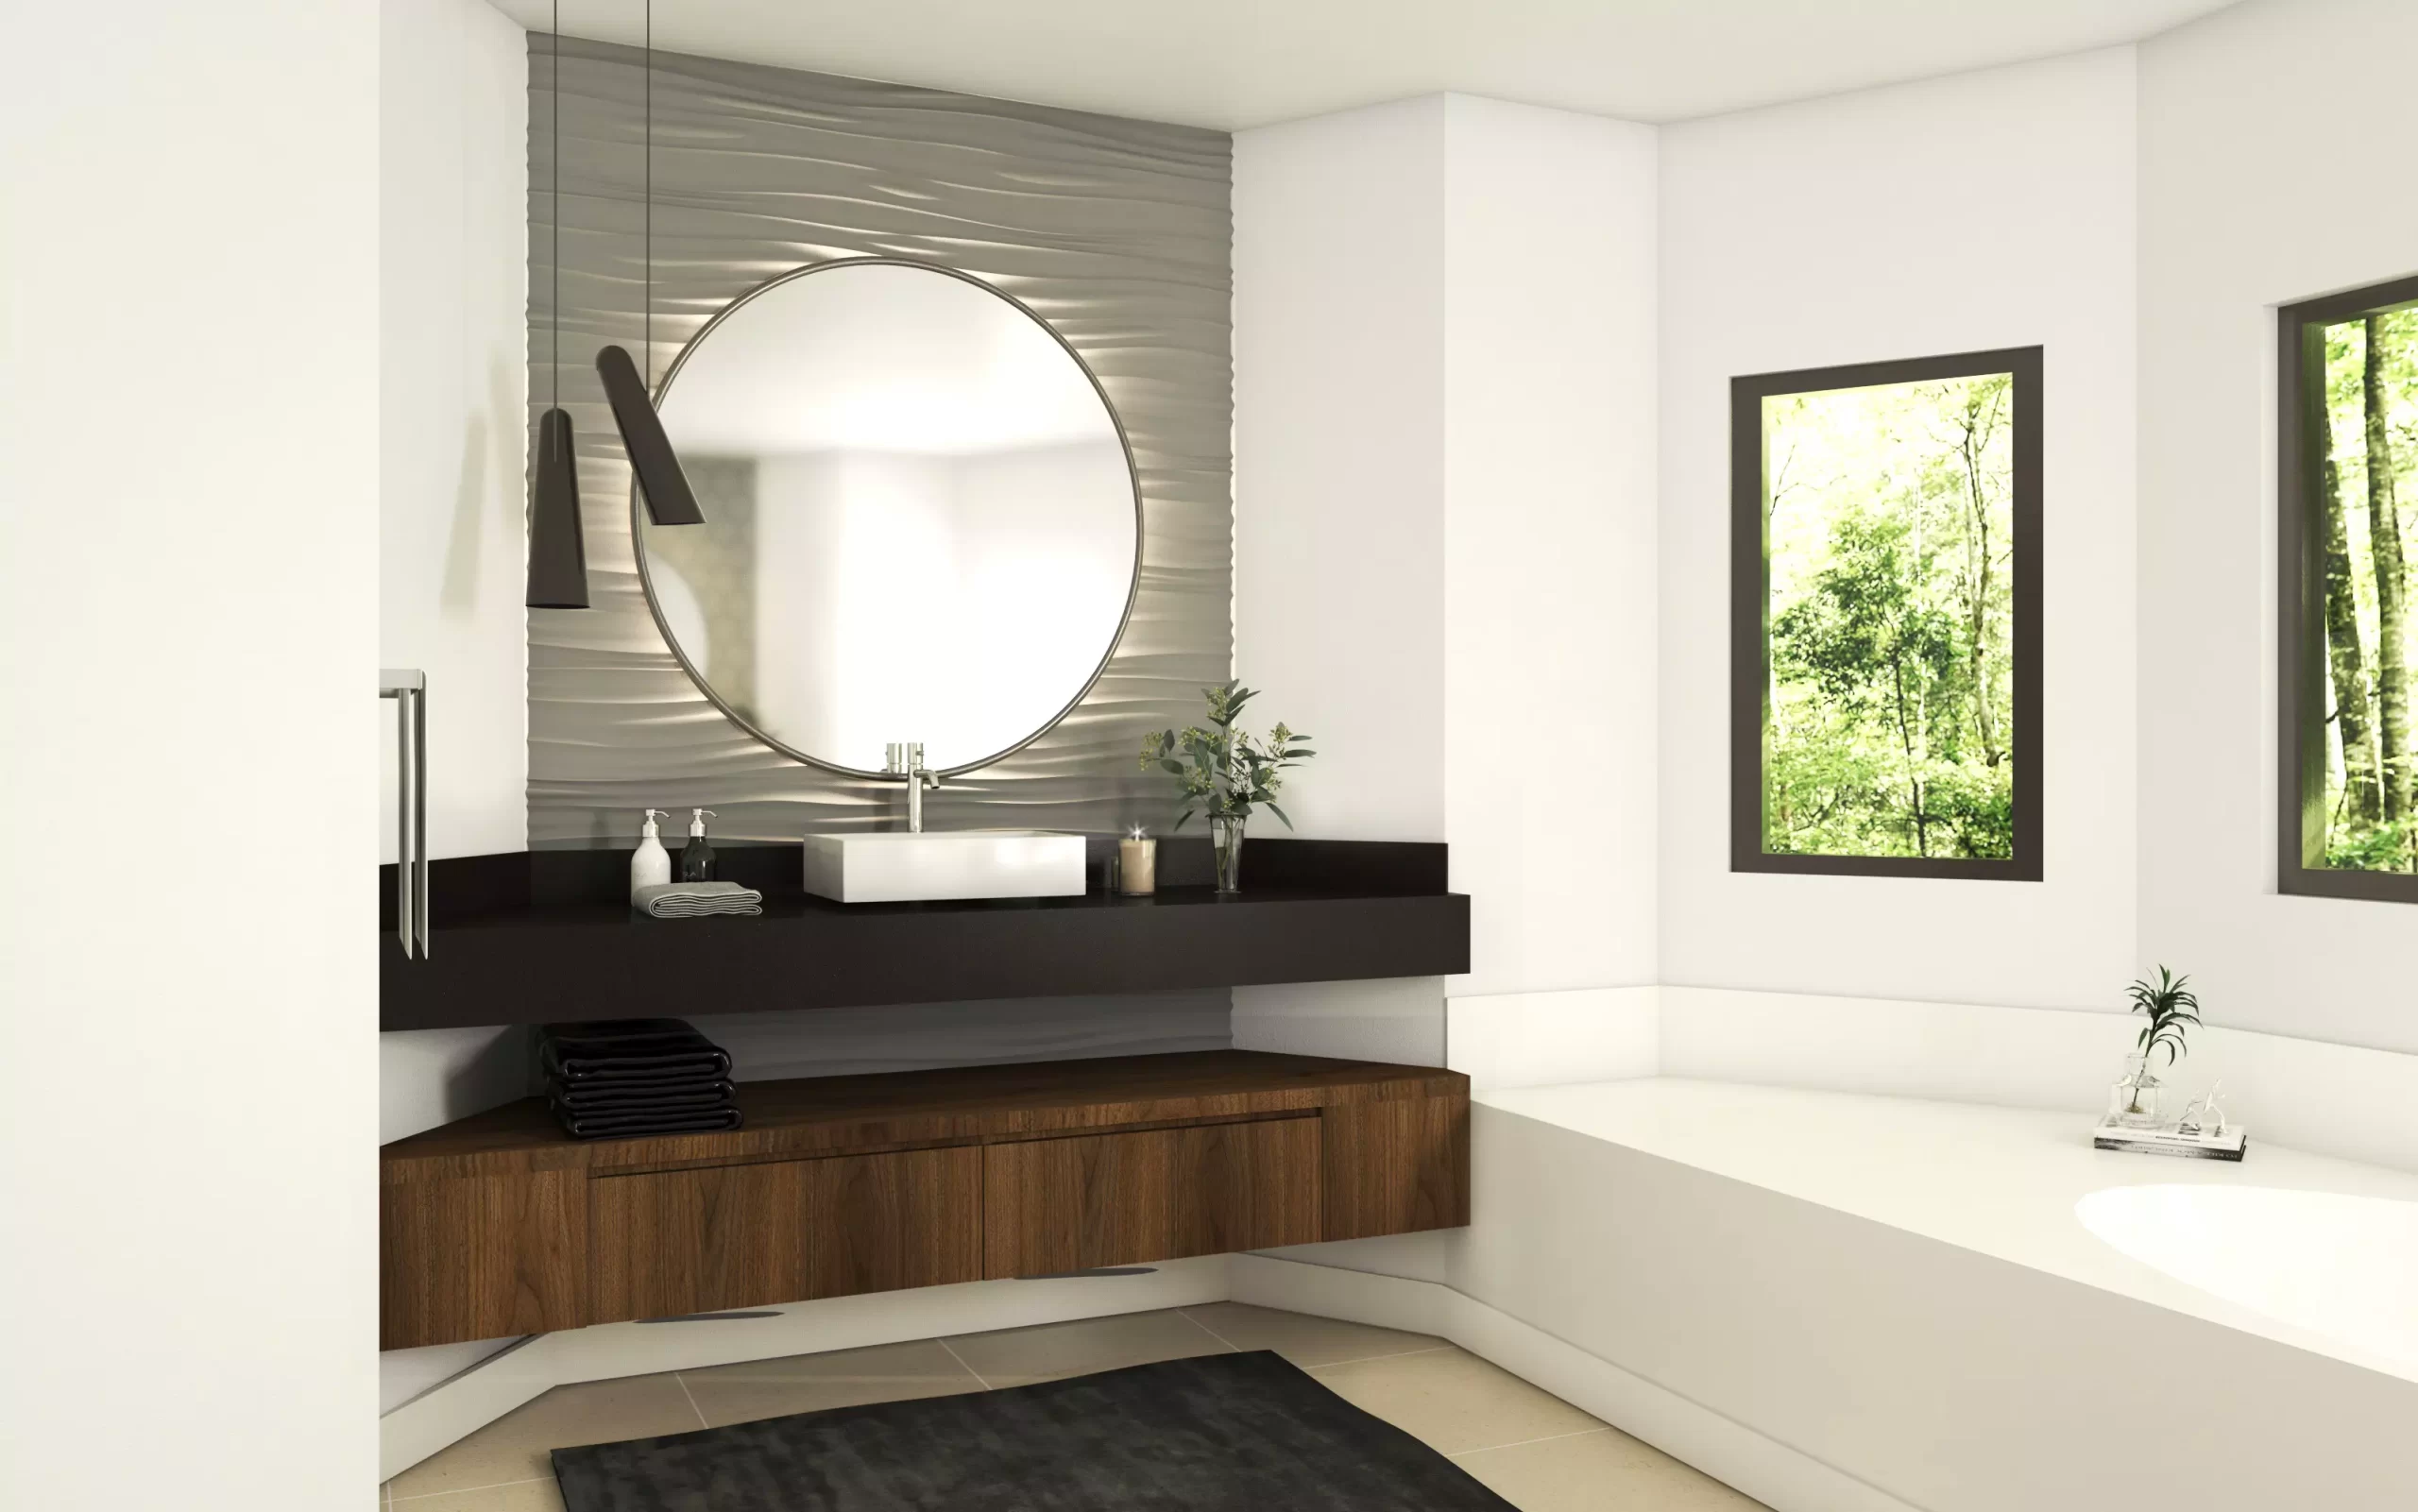 A modern bathroom with a bathtub and sink featuring sleek design.